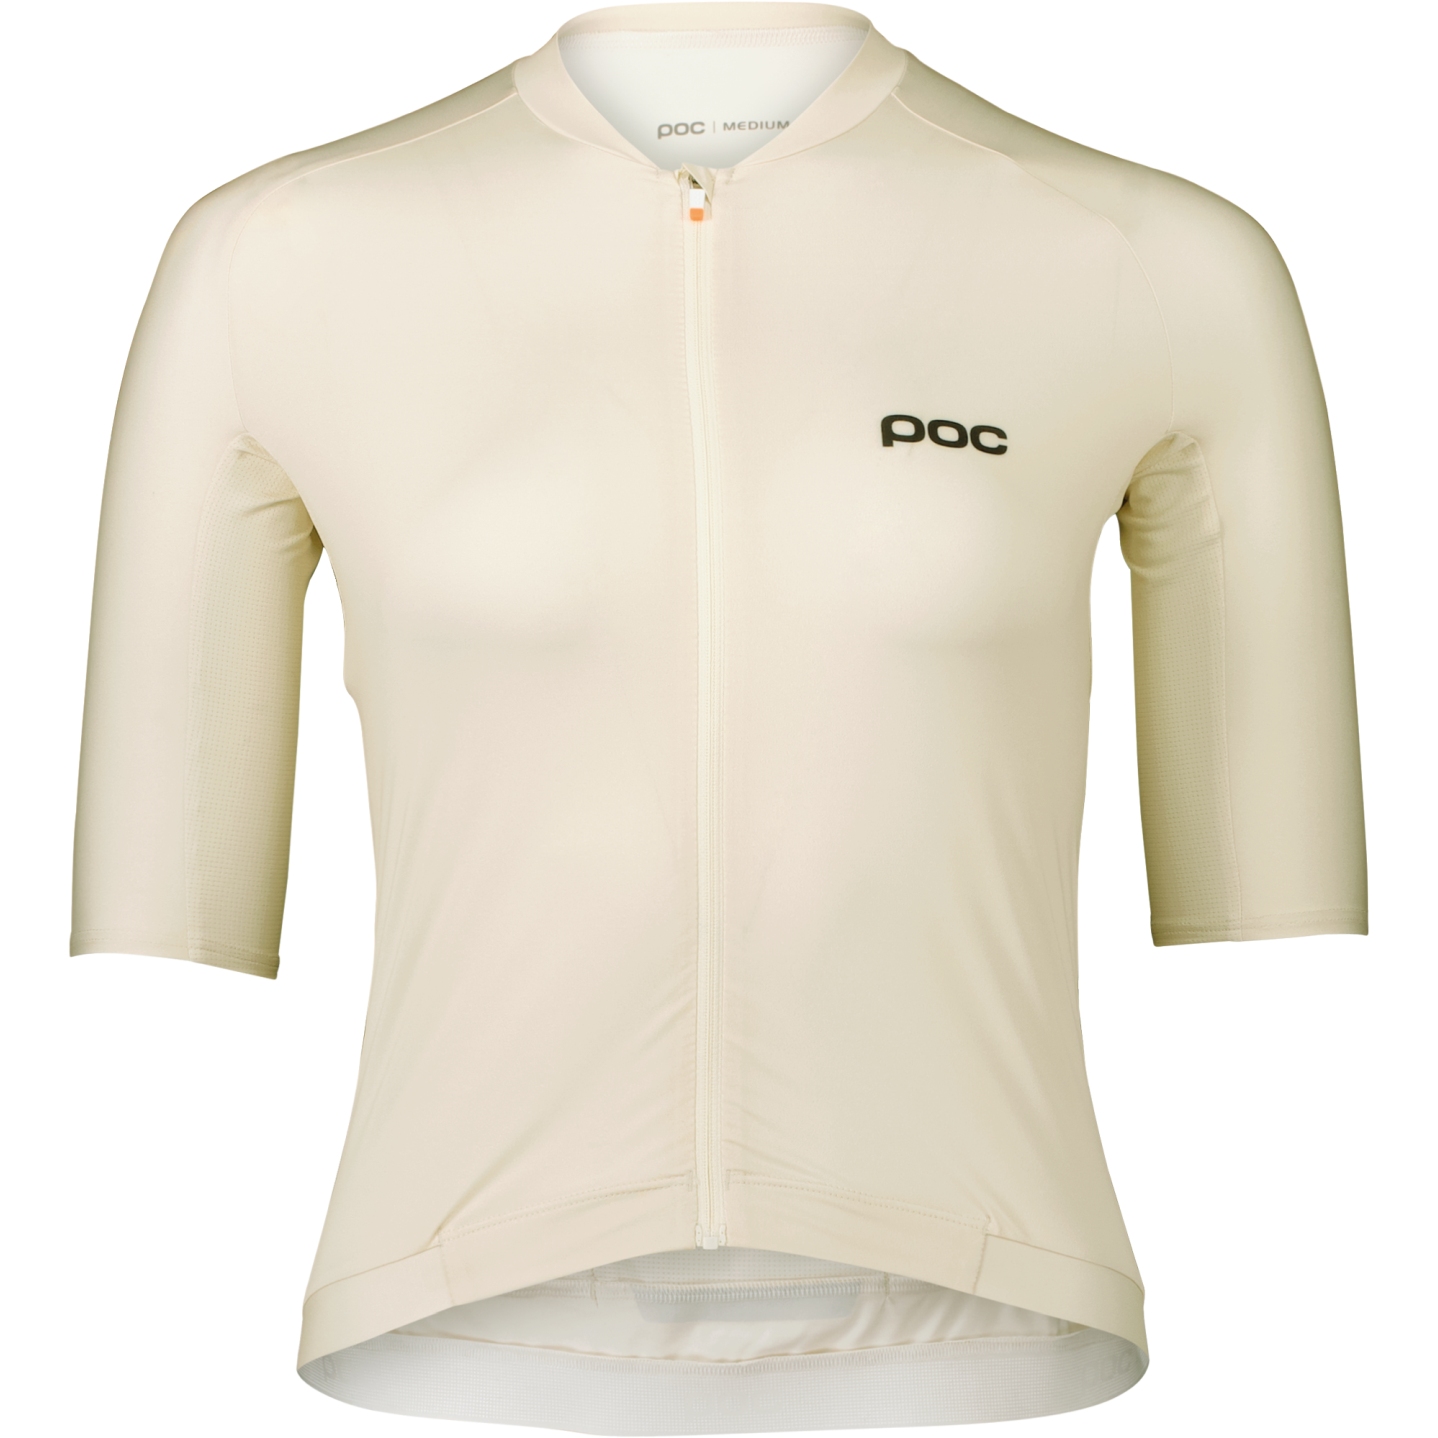 Productfoto van POC Pristine Shirt Dames - 1065 Okenite Off-White